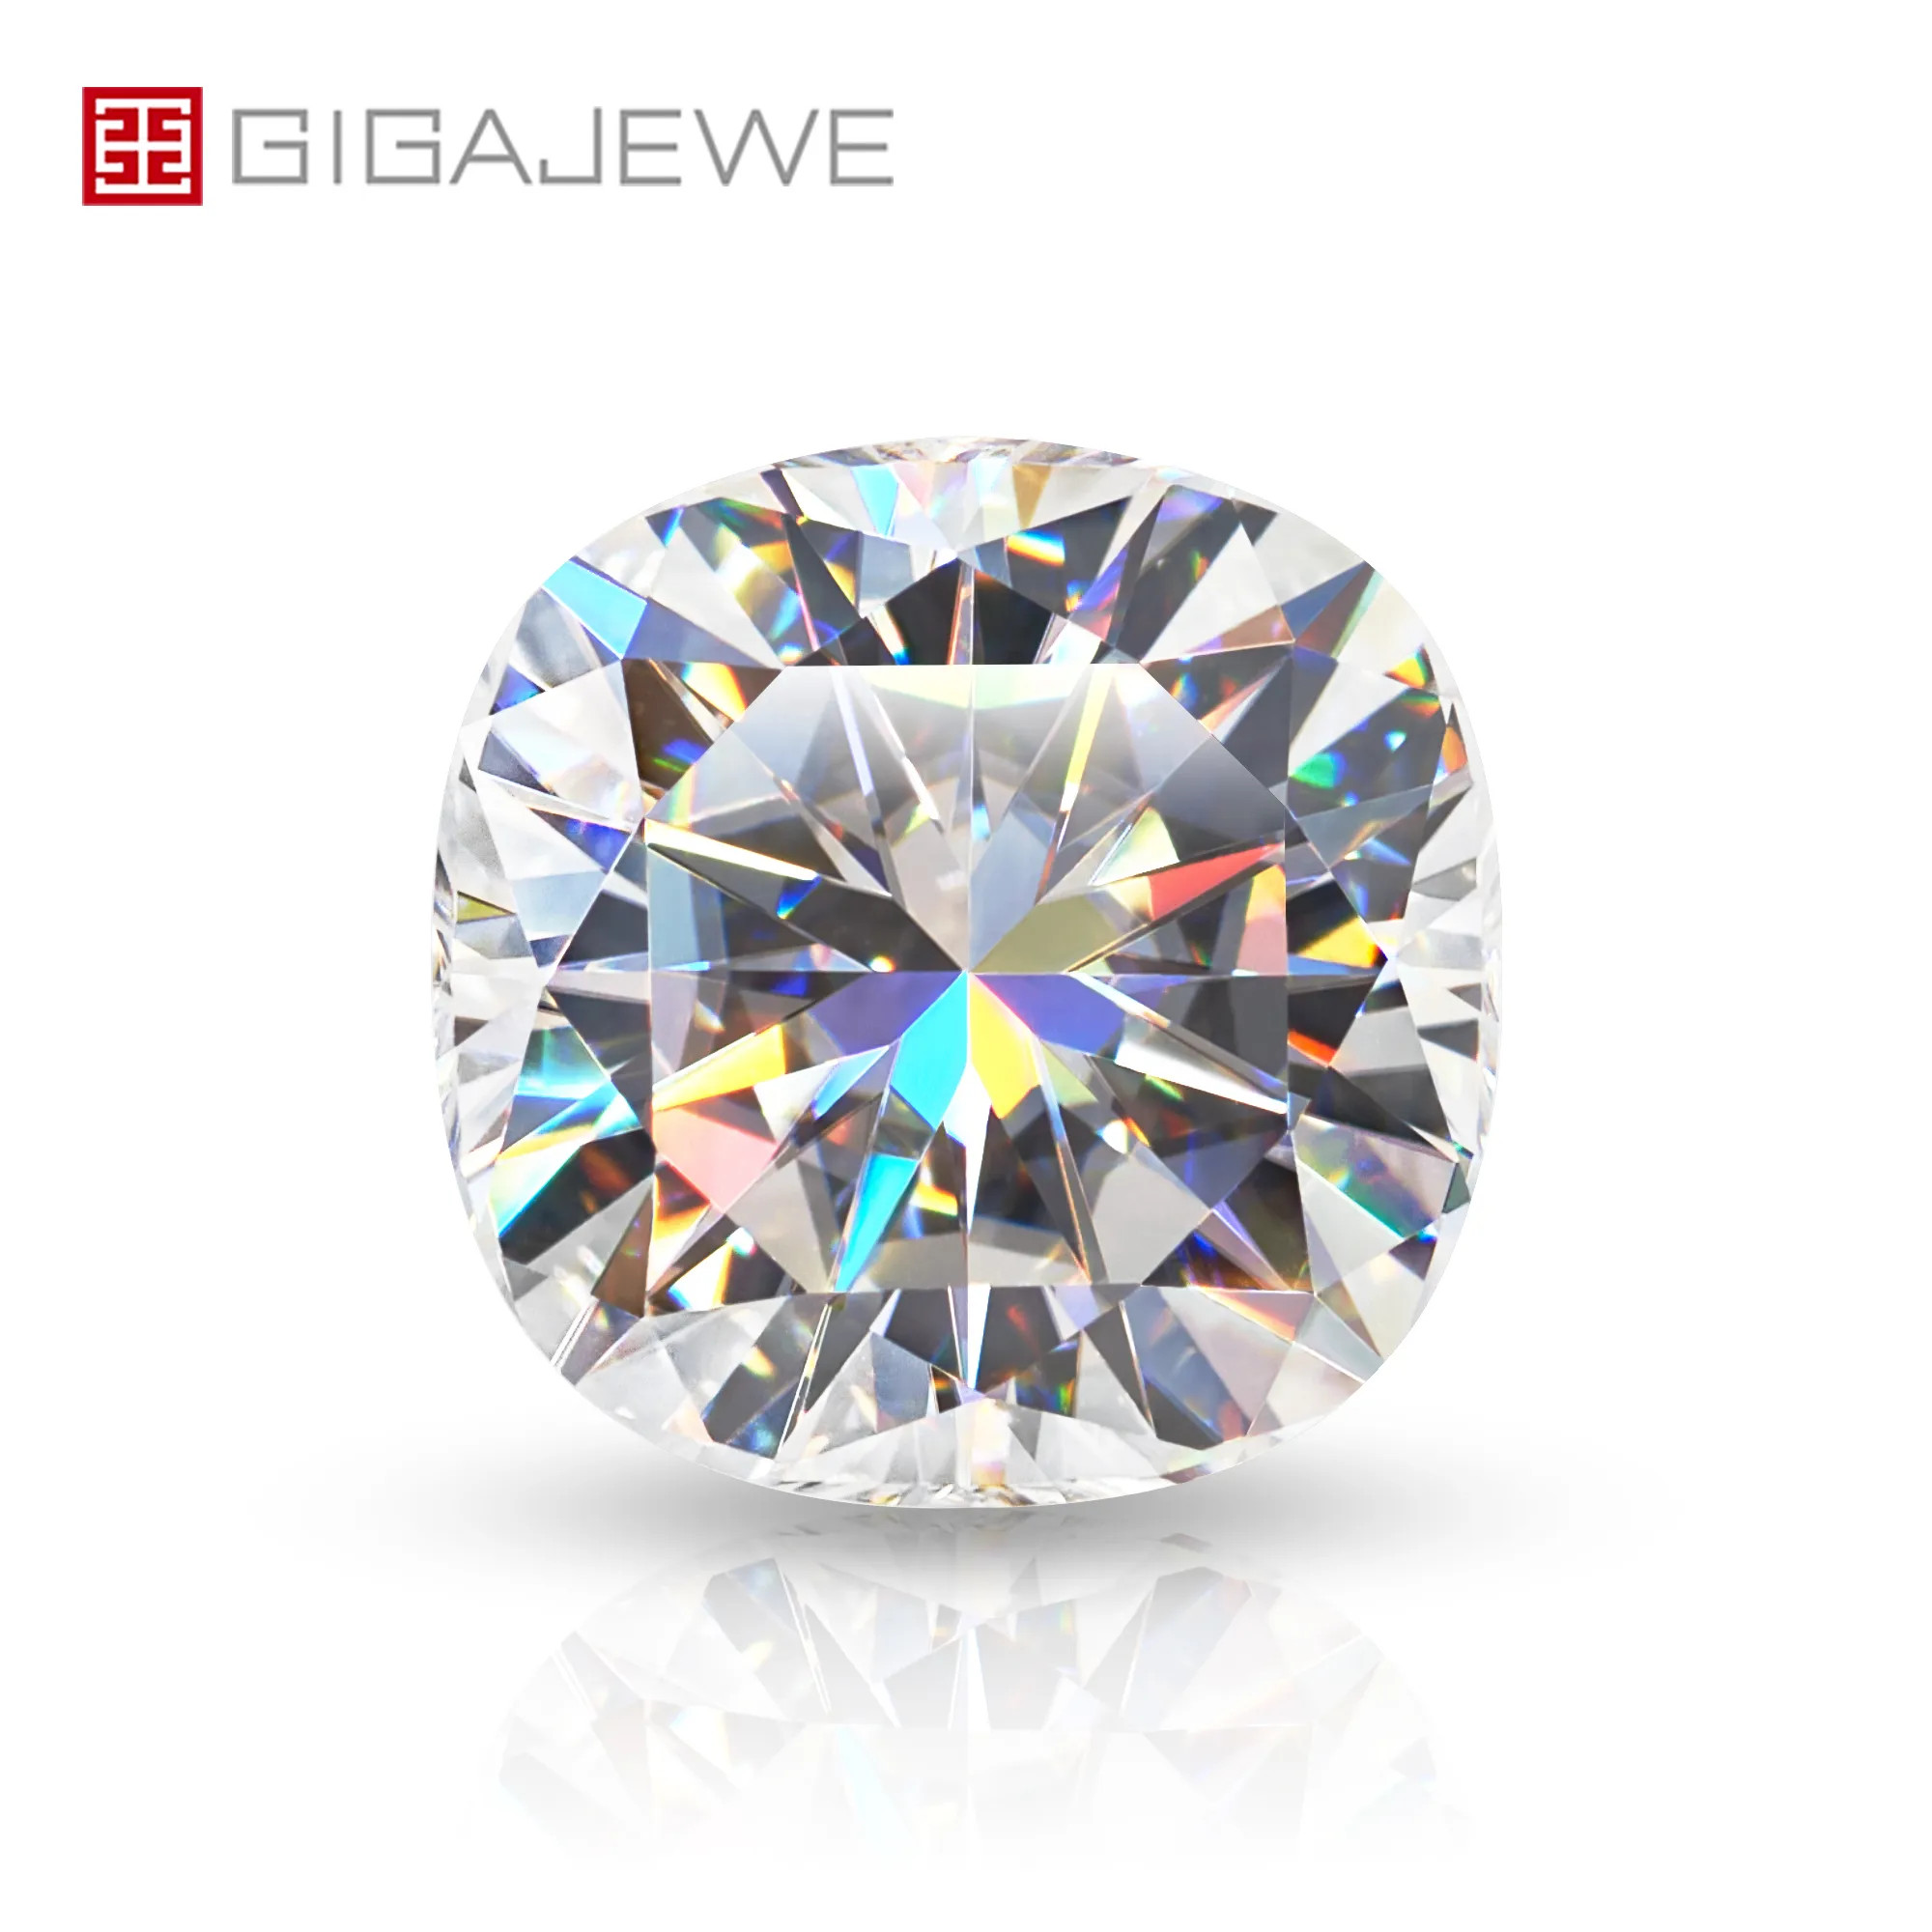 Gigajewe White D Kolor Poduszka Cut Vvs1 Moissanite Diamond 0.5mm-7mm do wycięcia podejmowania biżuterii